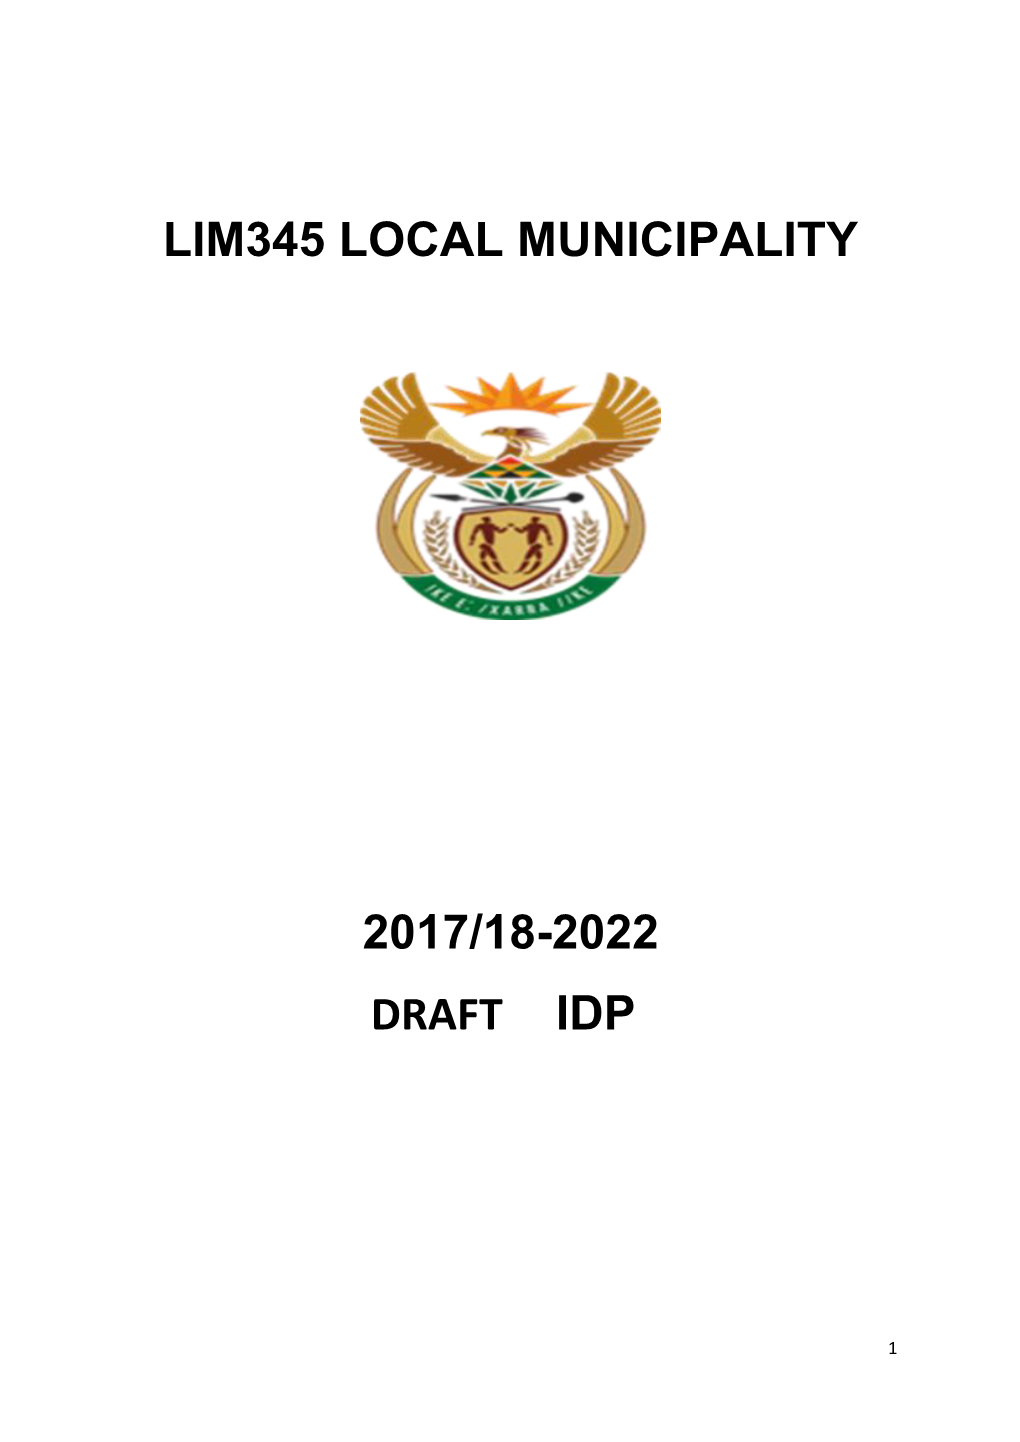 Lim345 Local Municipality 2017/18-2022 Draft